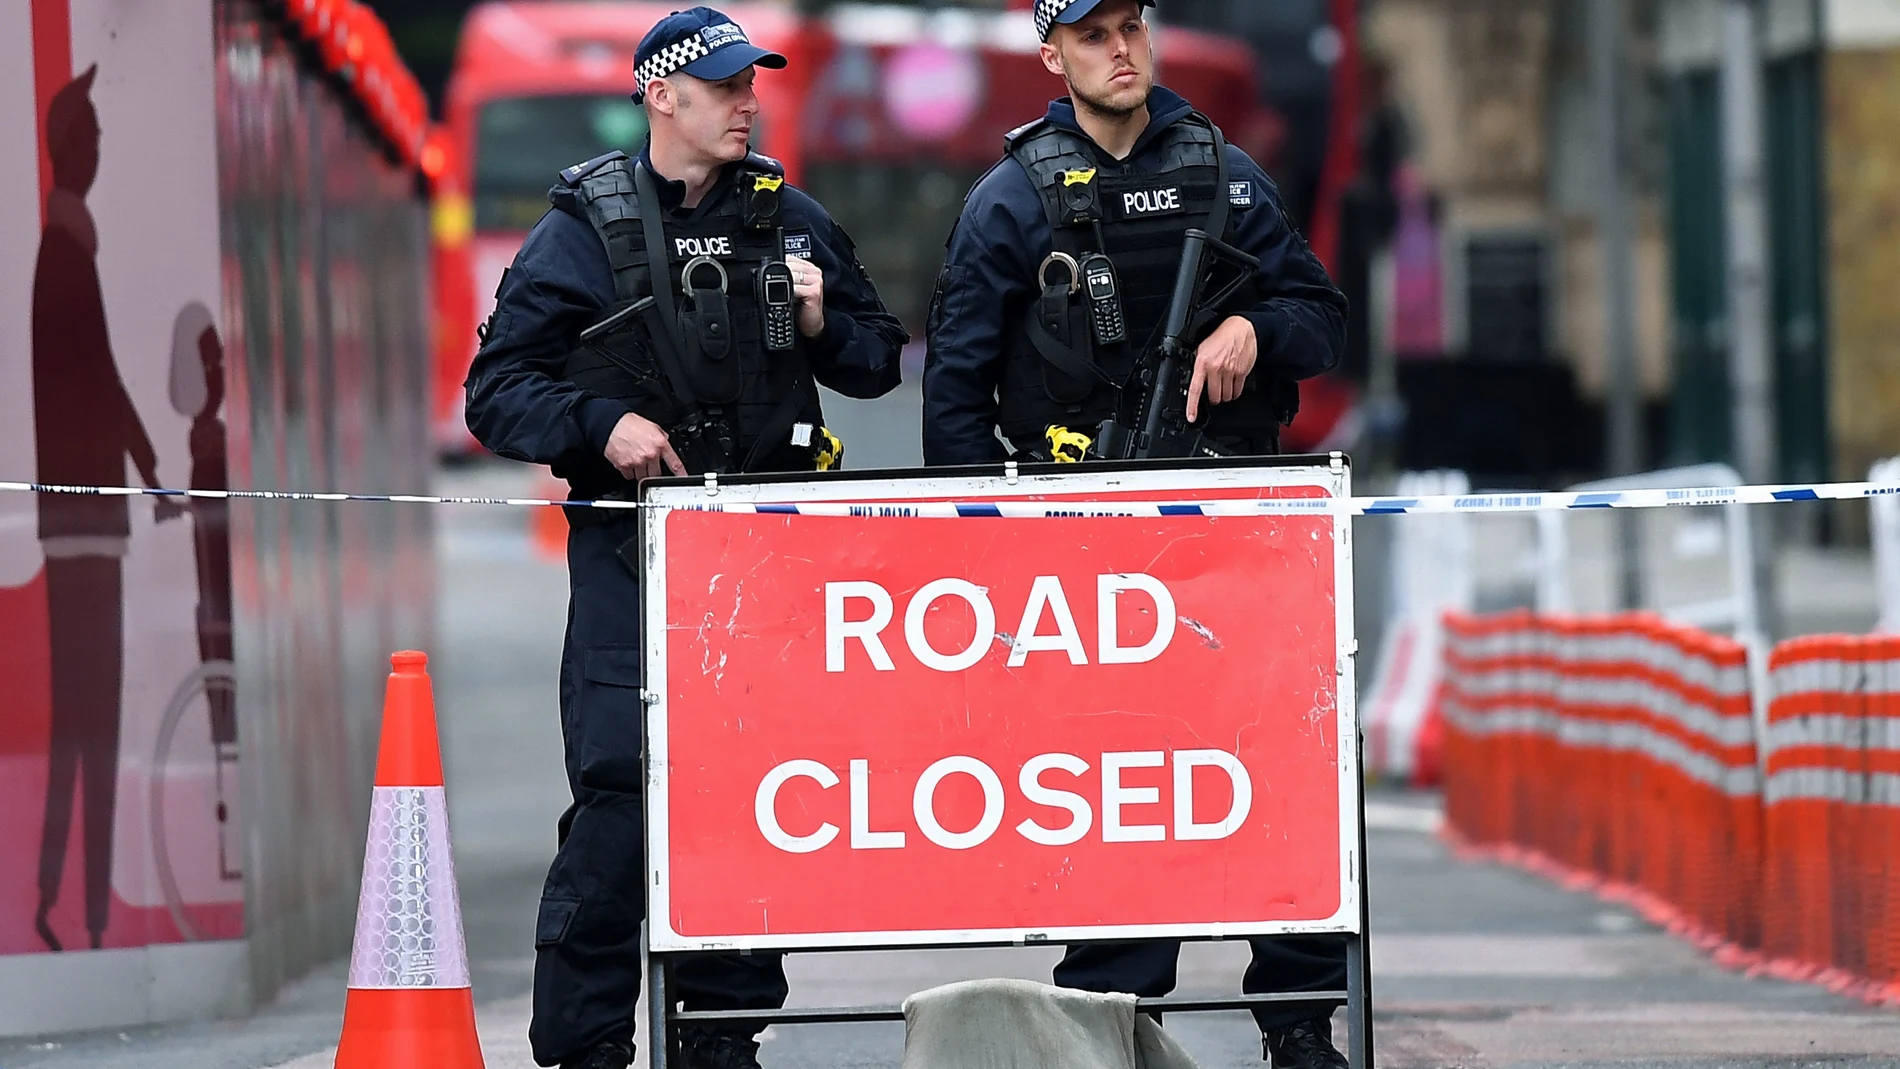 La Policía británica hace guardia en la zona de Londres atacada